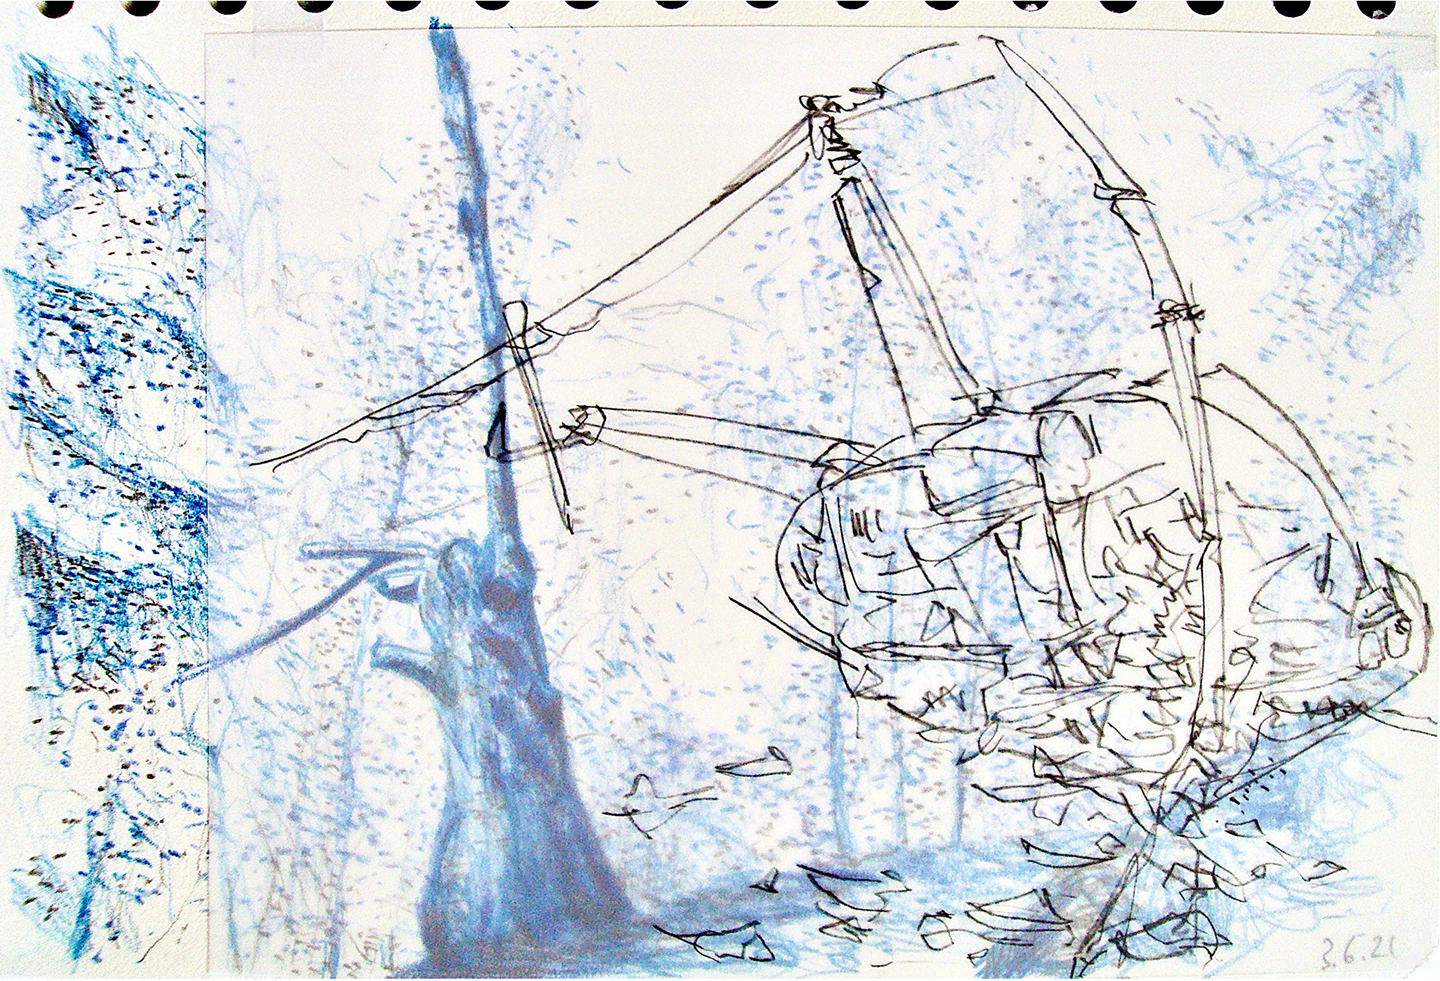 © Leo Brunschwiler, havarierter Baum und abgestürzter Helikopter, Farbstift und Bleistift auf Papier und Polyesterfolie, 14 cm x 21 cm , 2021
